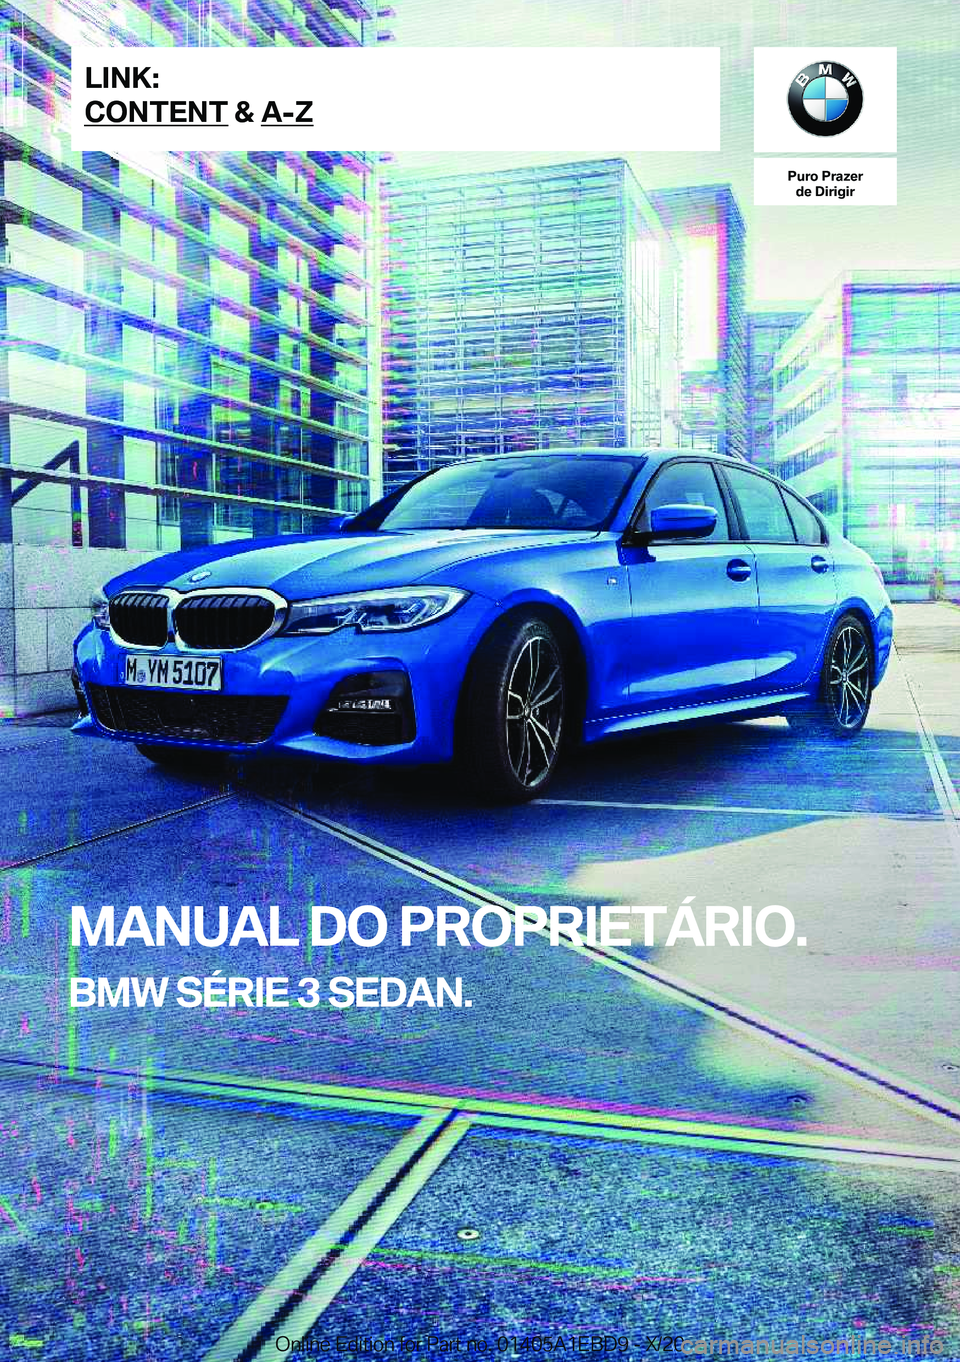 BMW 3 SERIES 2021  Manual do condutor (in Portuguese) �P�u�r�o��P�r�a�z�e�r�d�e��D�i�r�i�g�i�r
�M�A�N�U�A�L��D�O��P�R�O�P�R�I�E�T�Á�R�I�O�.
�B�M�W��S�